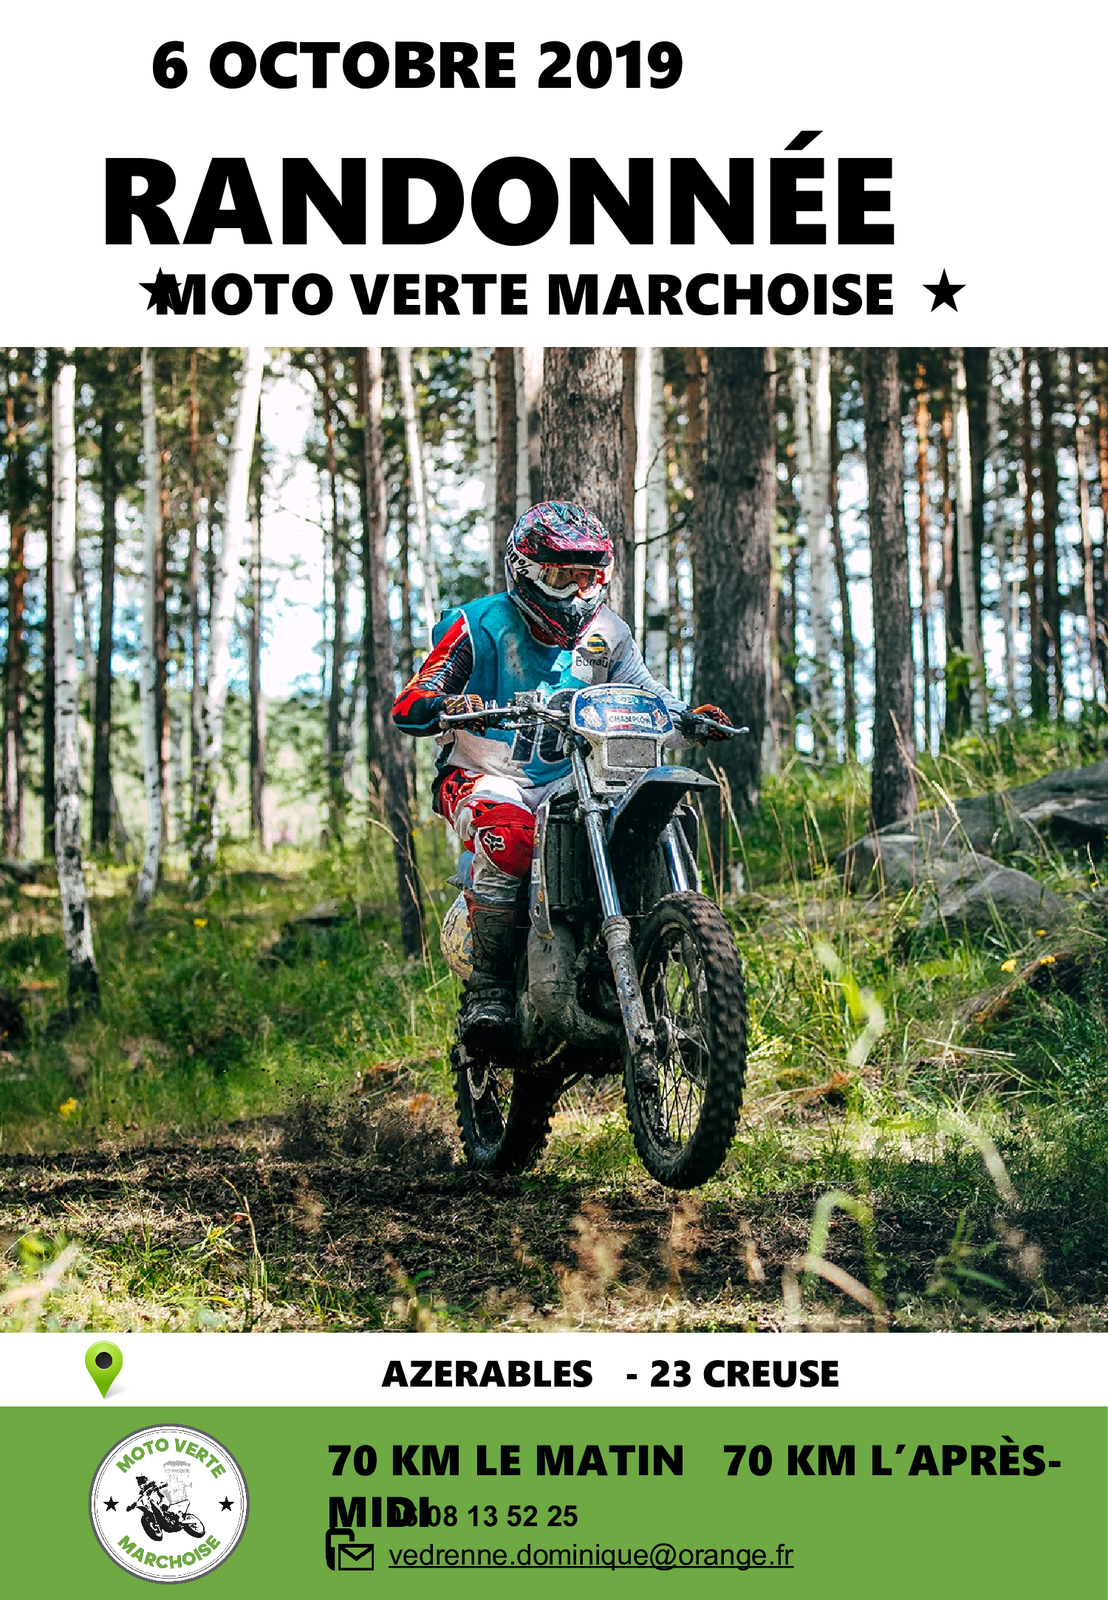 Randonnée moto le 6 octobre 2019 du Moto Verte Marchoise à Azerables (23) -  RANDONNEE ENDURO DU SUD OUEST